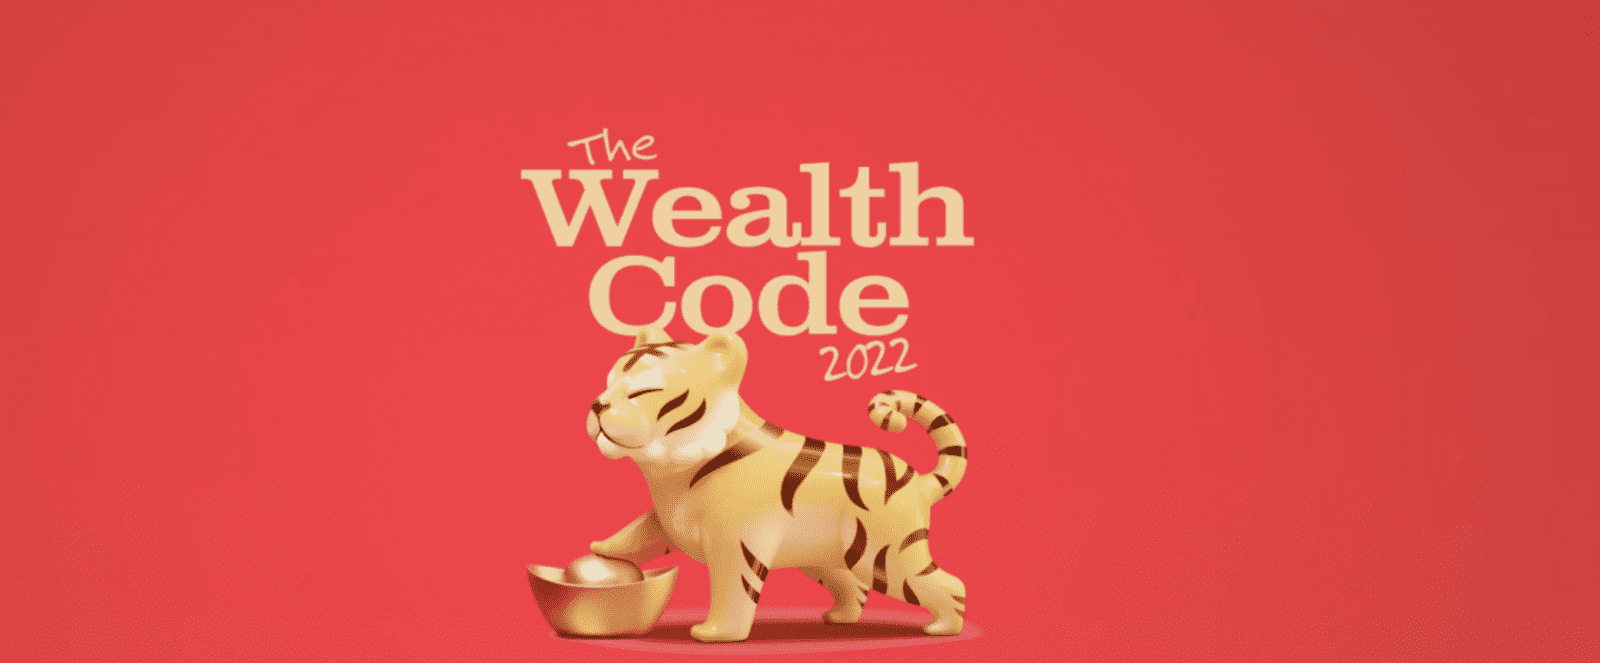 Изображение [Jessie Lee] Код Богатства (2022) в посте 262900